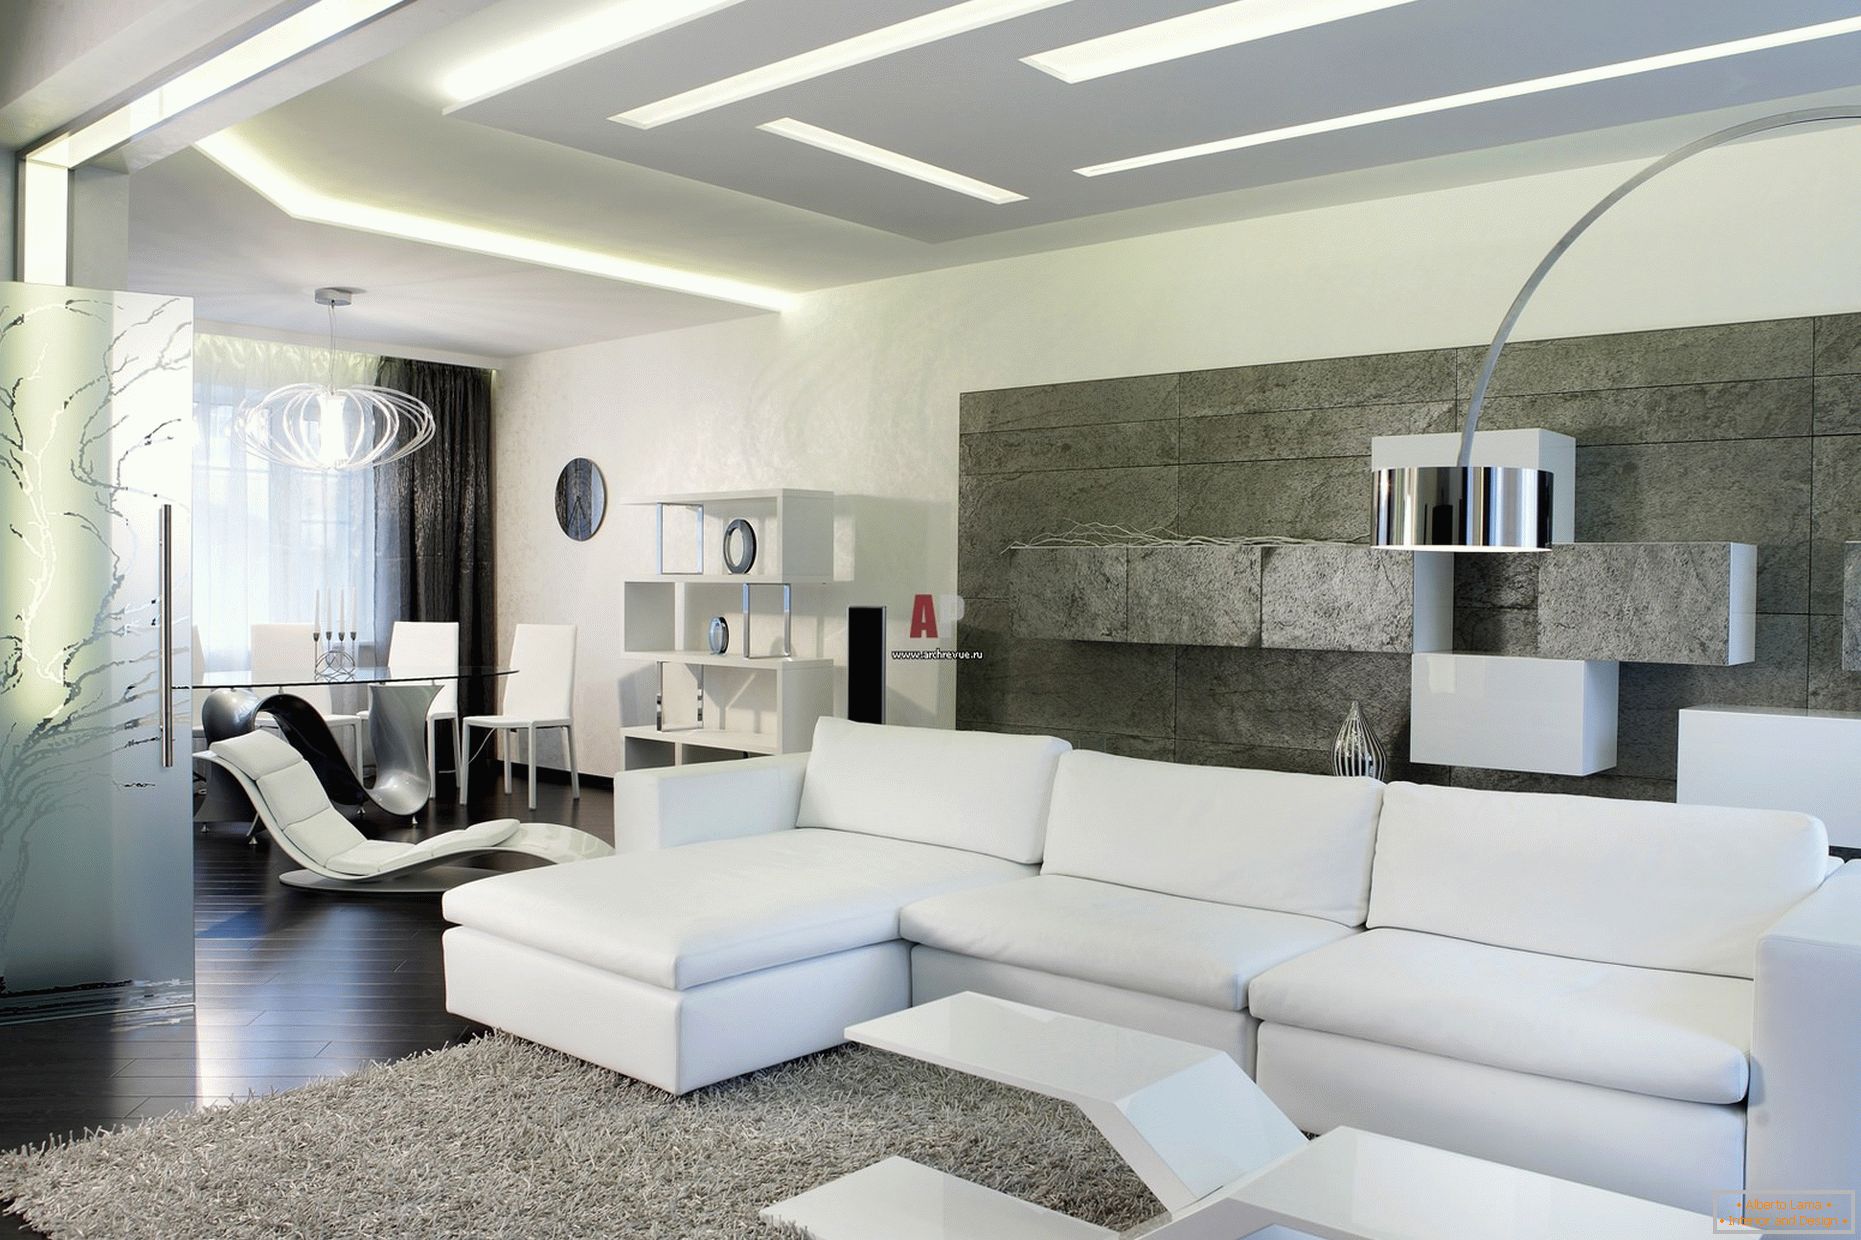 Interiorul alb al oaspeților camerei într-un stil minimalist este demn de remarcat pentru un design modern, îndrăzneț, cu indicii de înaltă tehnologie.